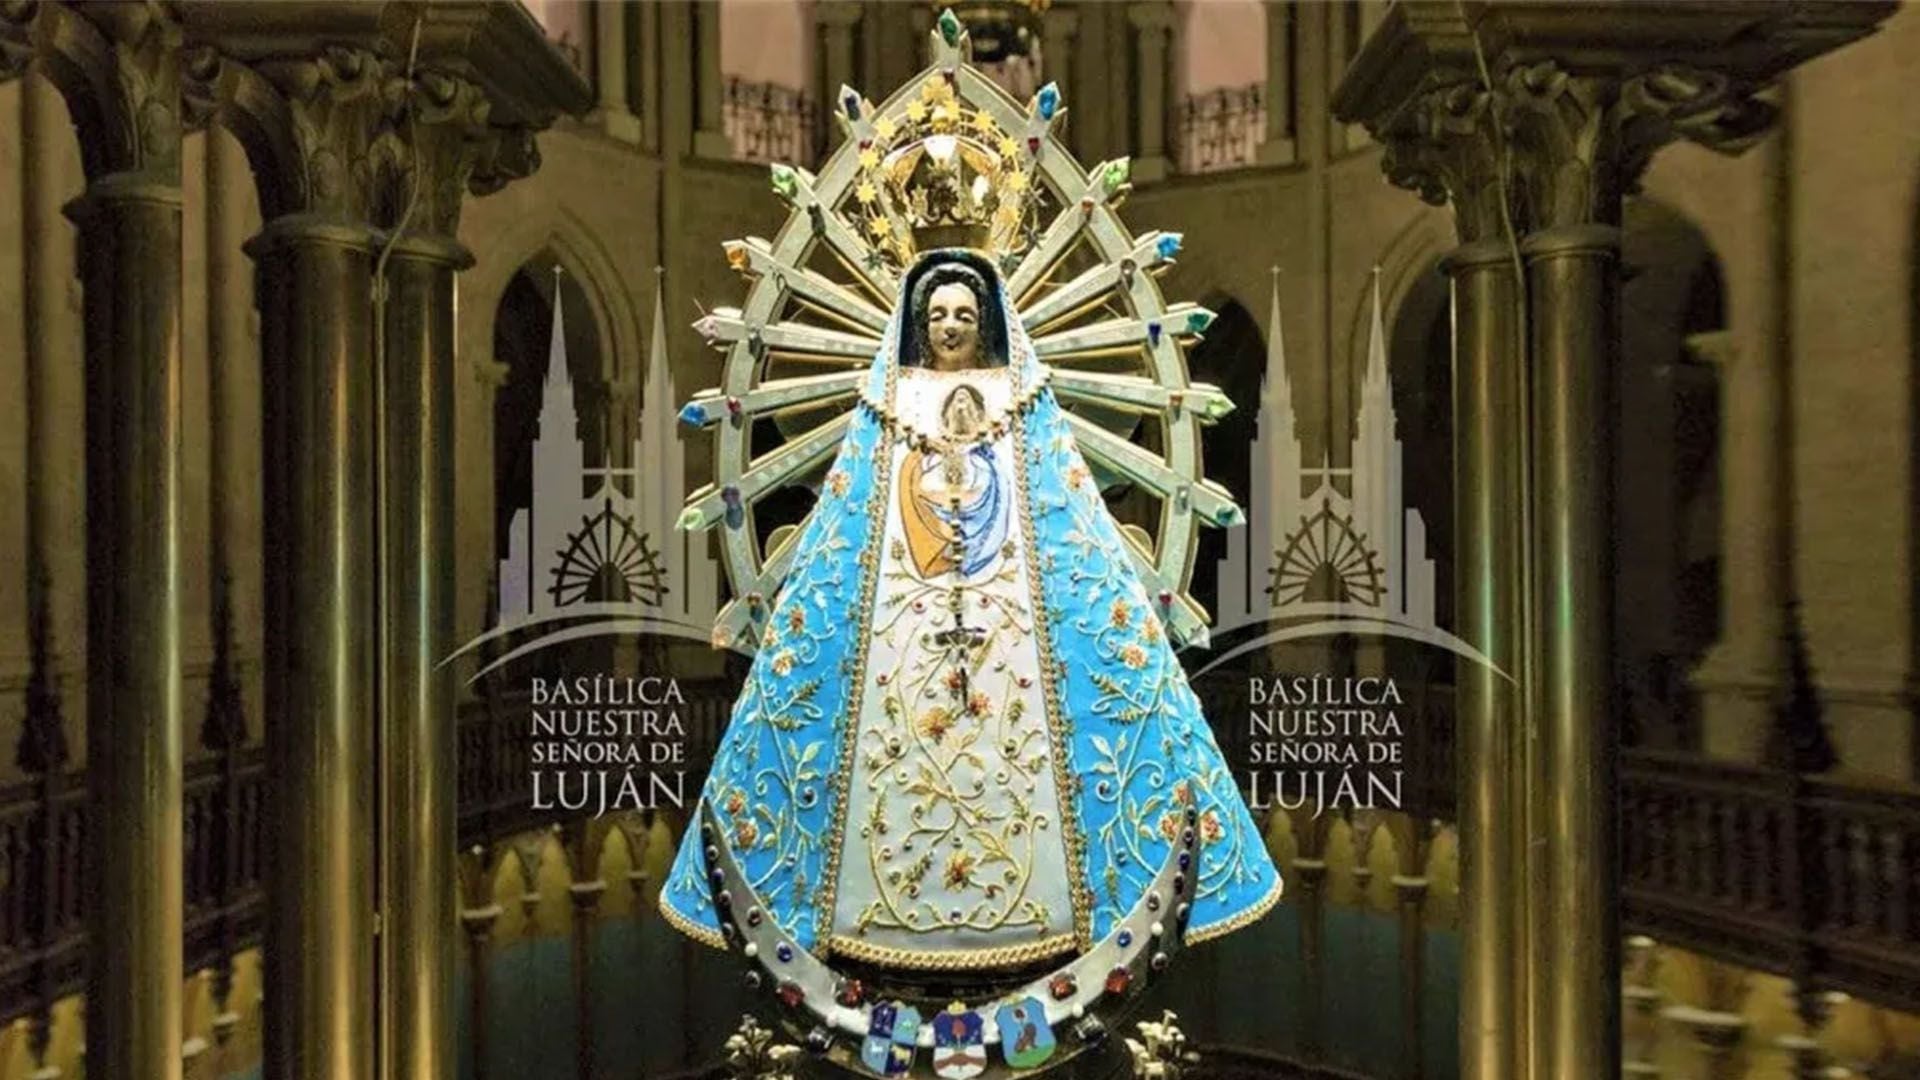 Día de la Virgen de Luján